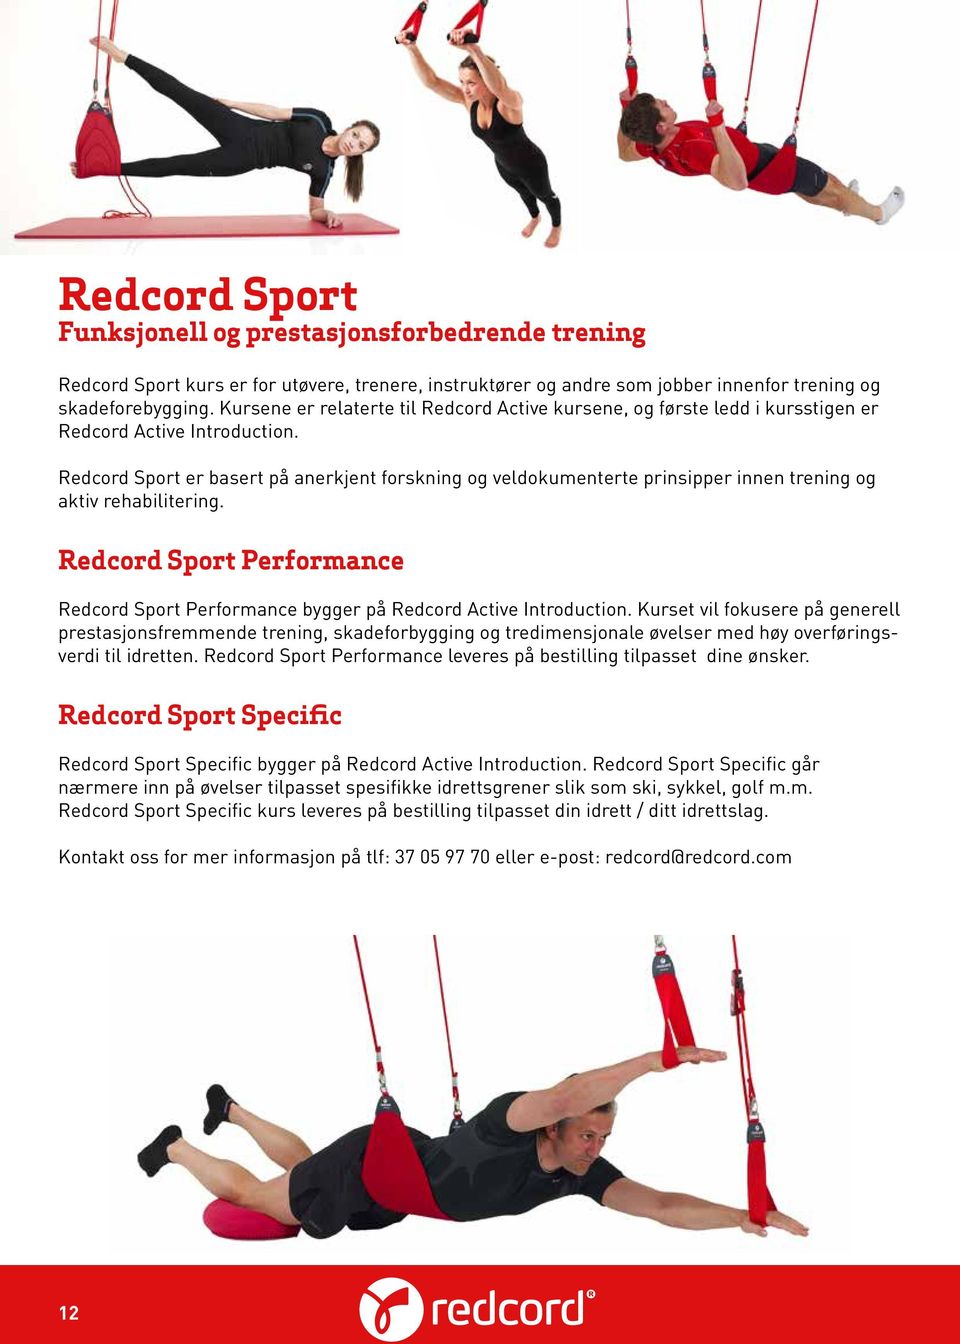 Redcord Sport er basert på anerkjent forskning og veldokumenterte prinsipper innen trening og aktiv rehabilitering.